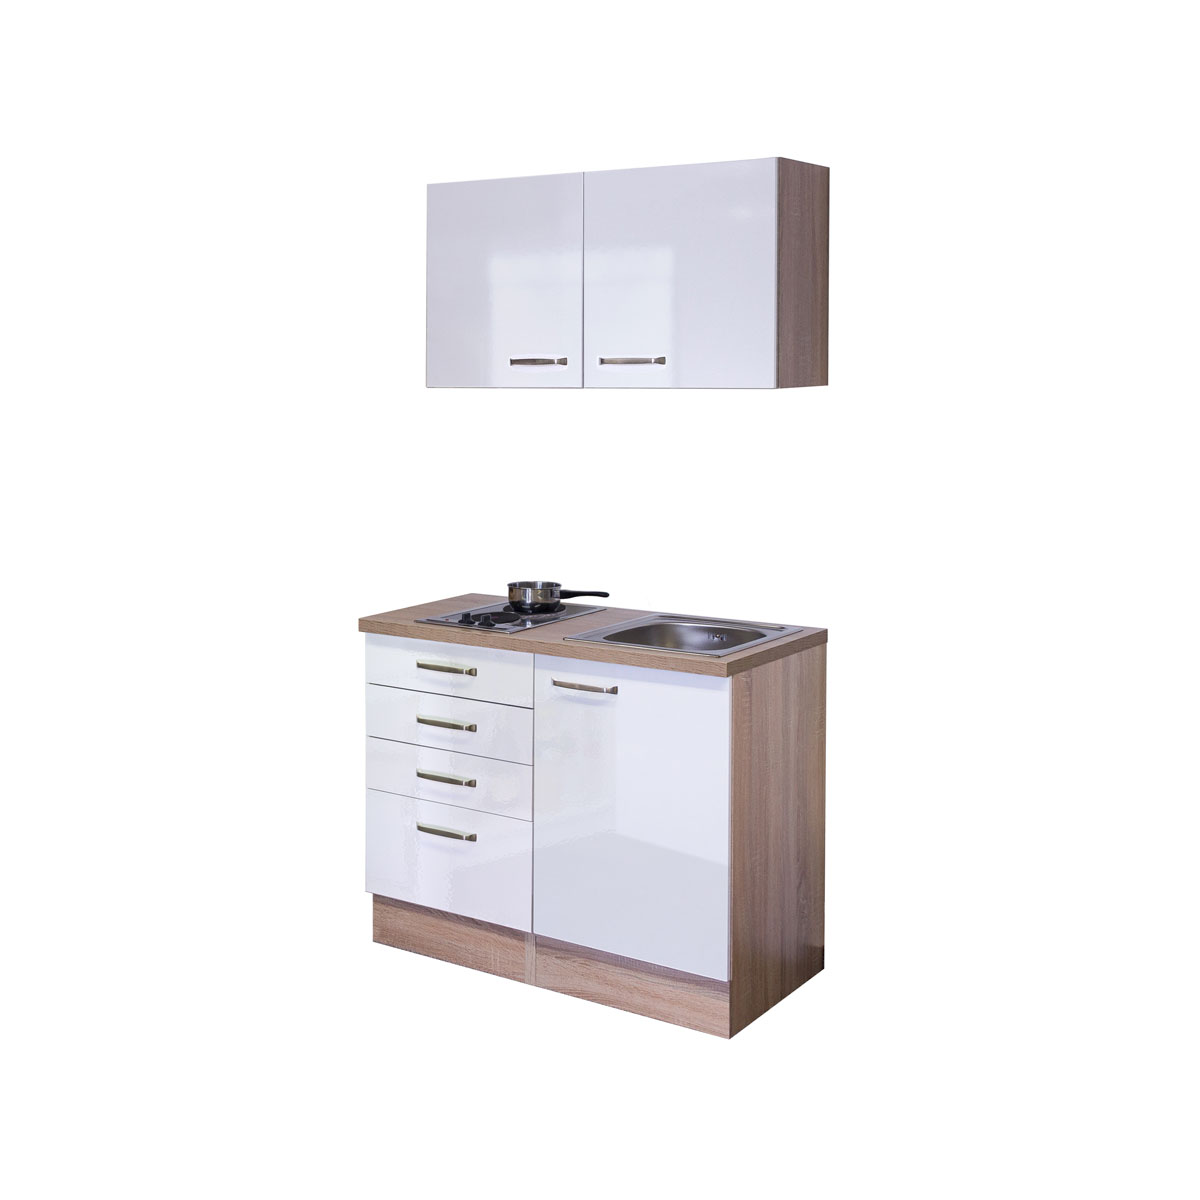 Miniküche VALERO 501-000 100 x 60 cm weiß-sonoma eiche | K000434232